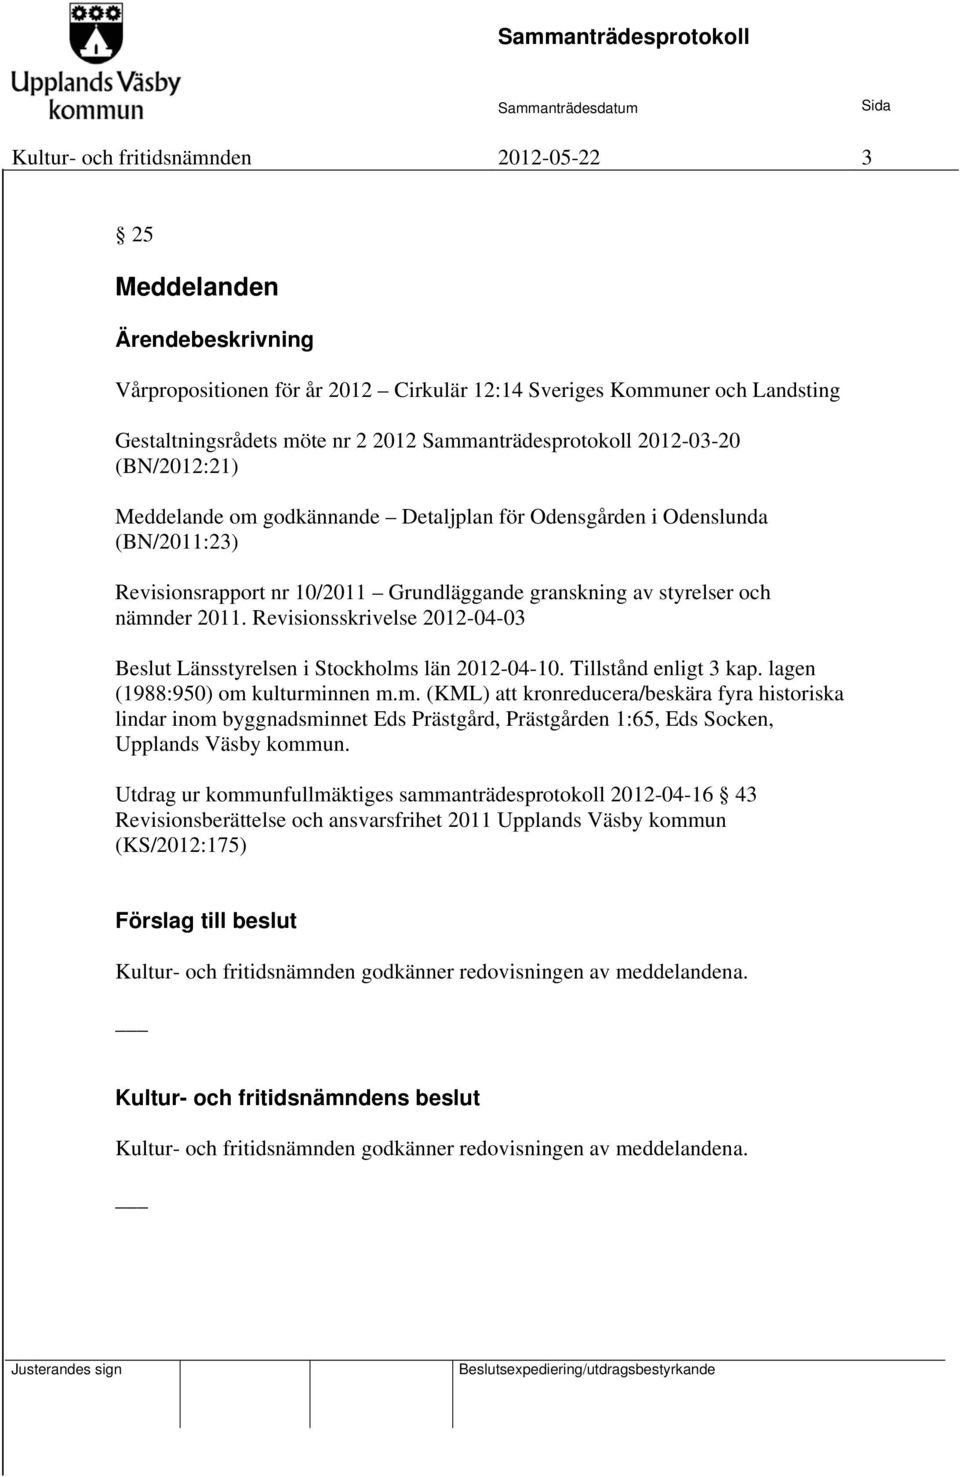 Revisionsskrivelse 2012-04-03 Beslut Länsstyrelsen i Stockholms